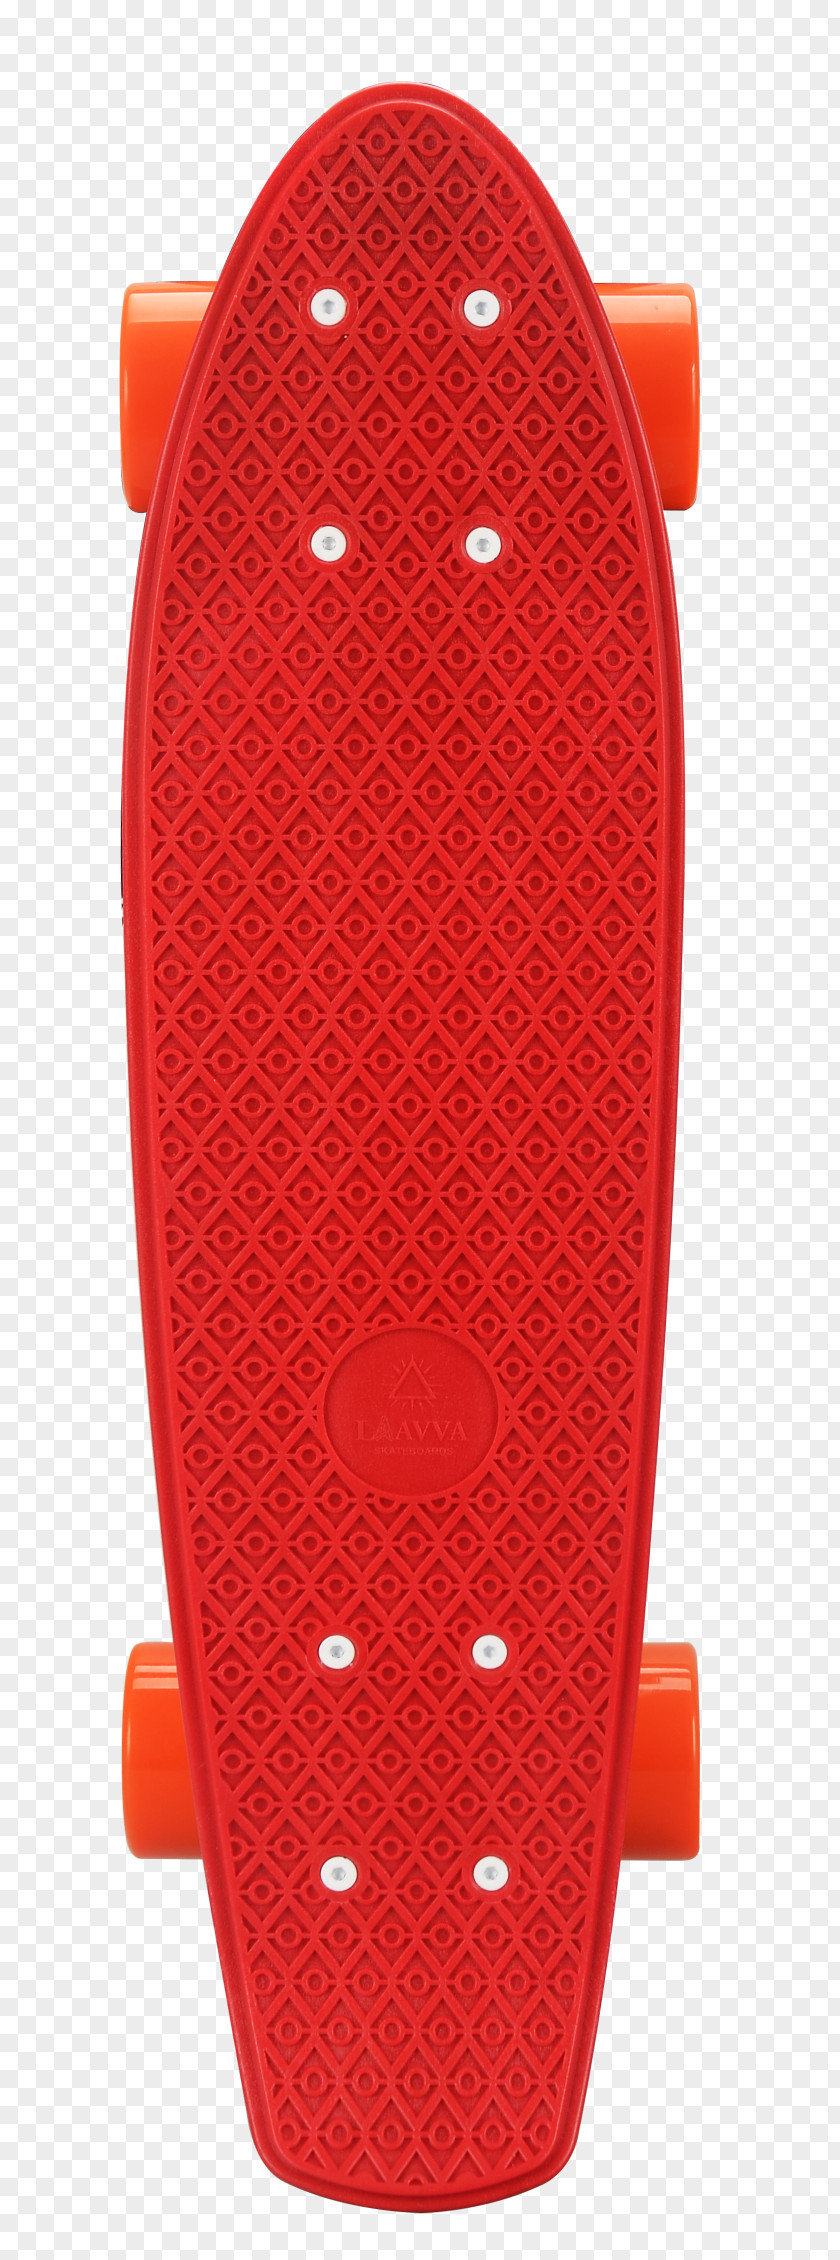 Skateboard Laavva Skateboards Longboard Penny Board Grip Tape PNG